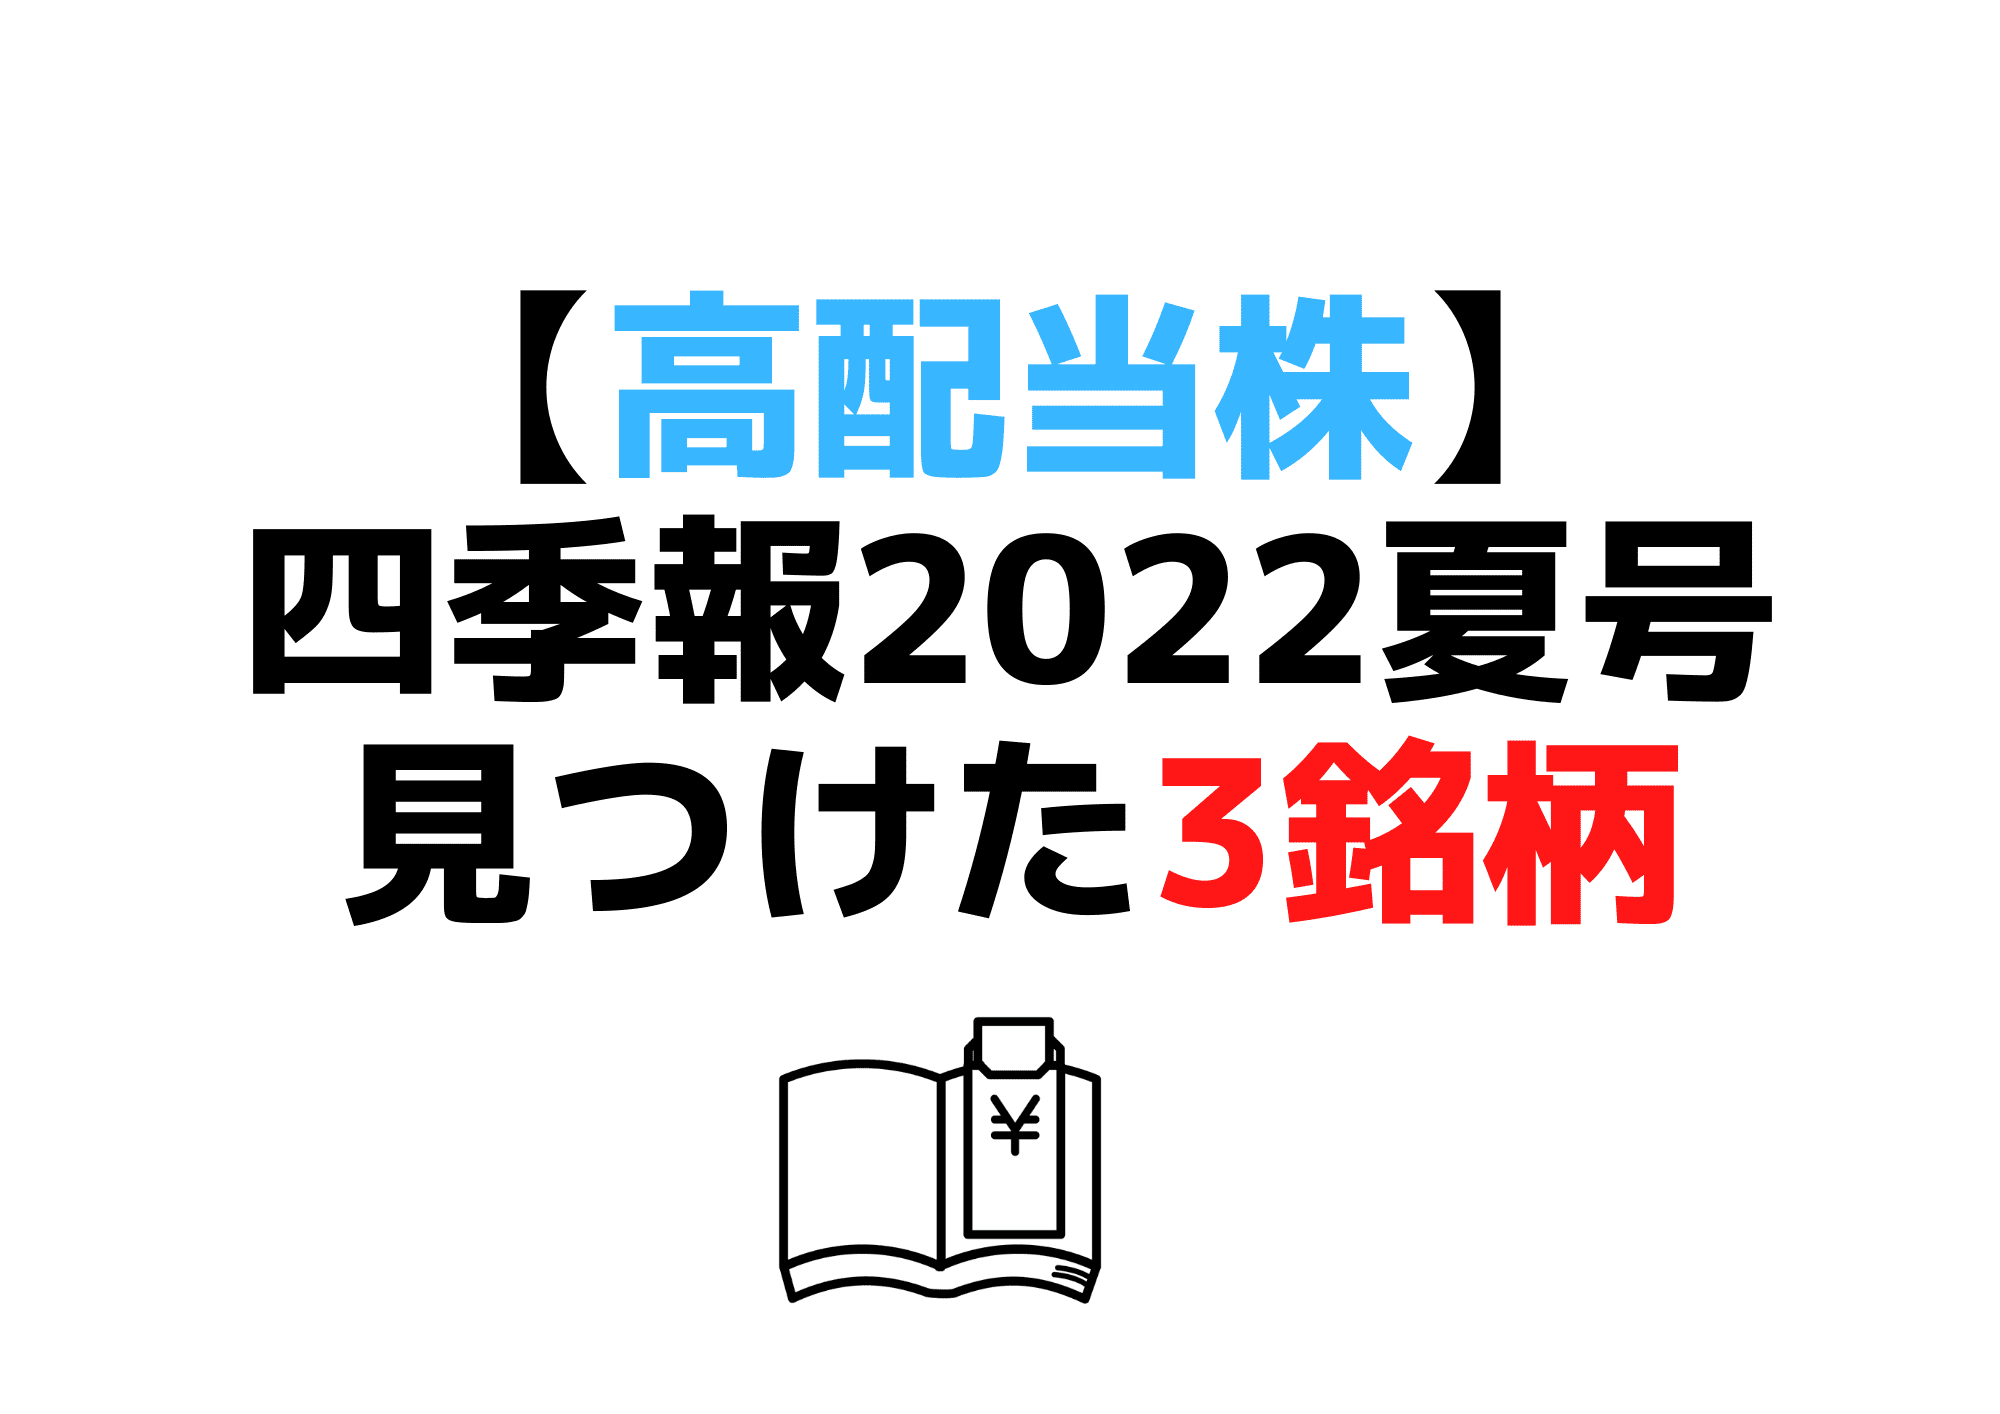 四季報2022夏号高配当